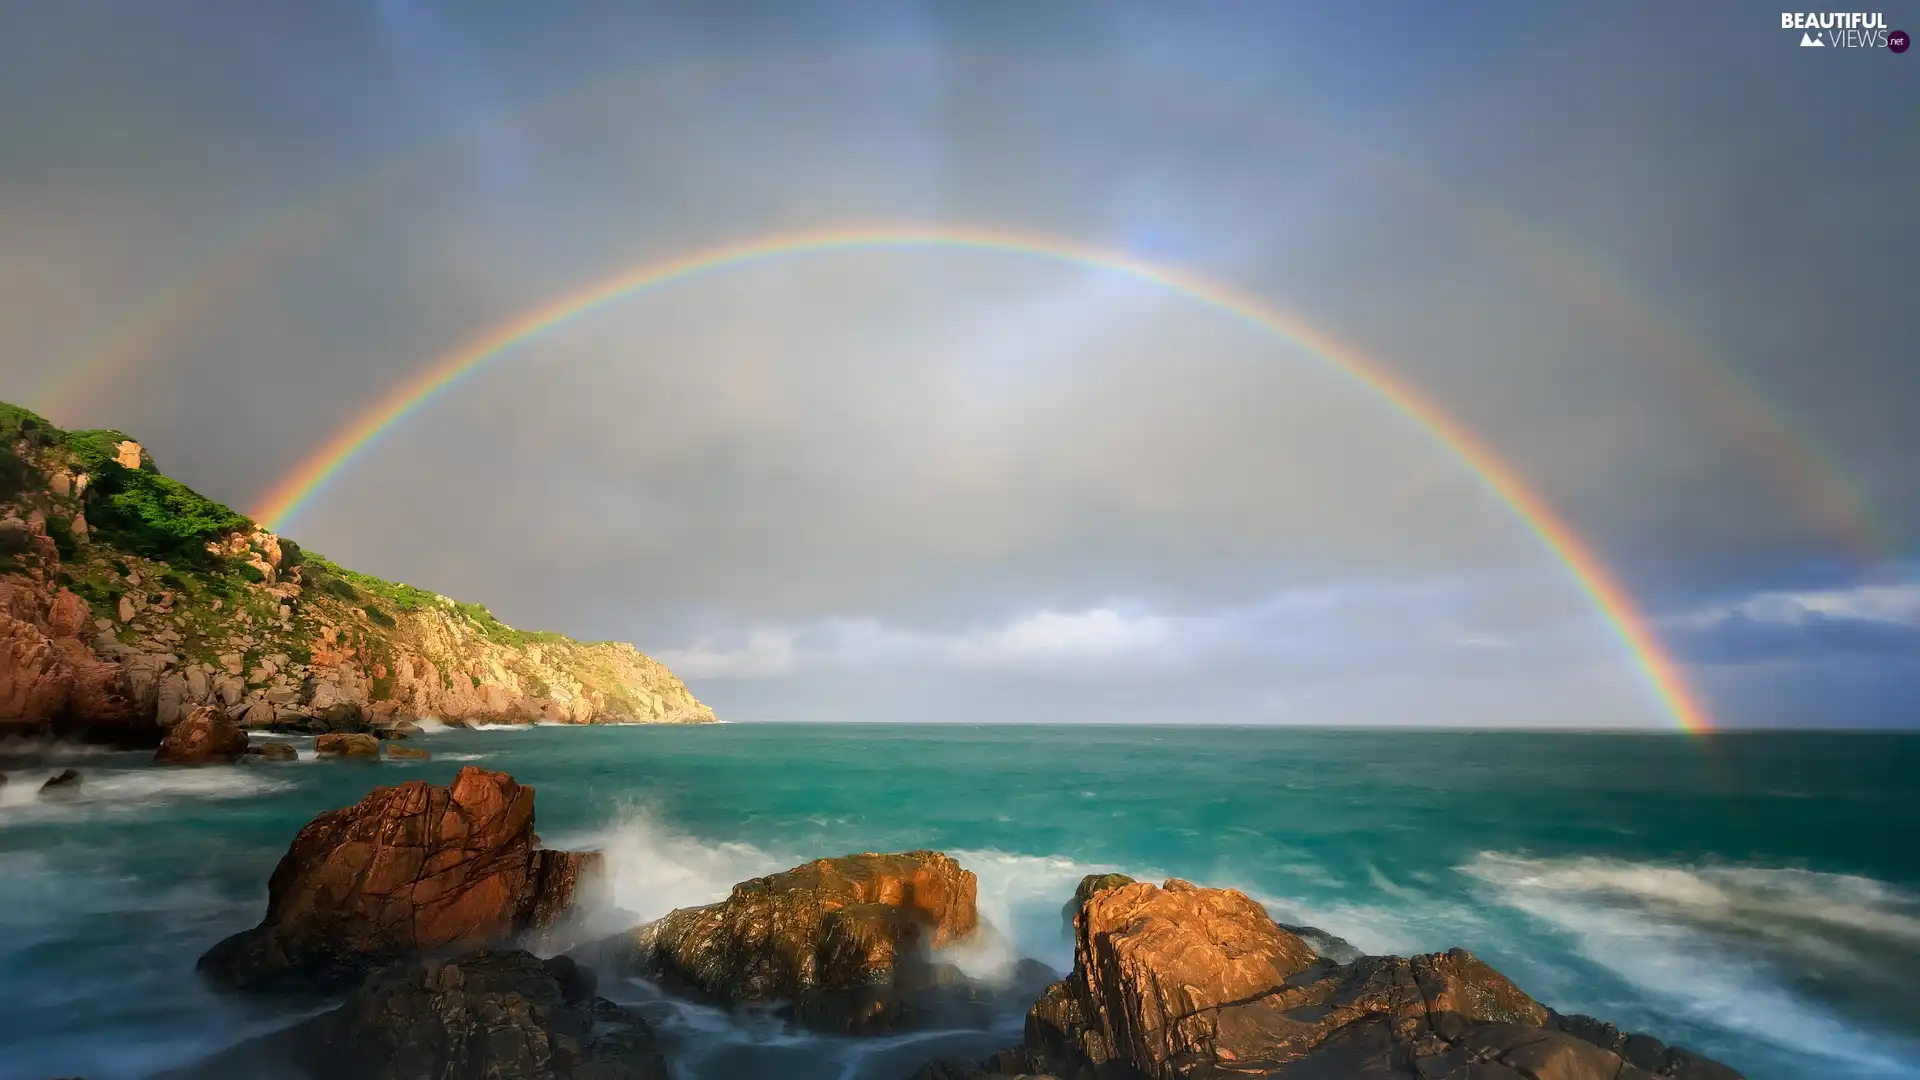 Waves, Great Rainbows, sea, rocks, Coast